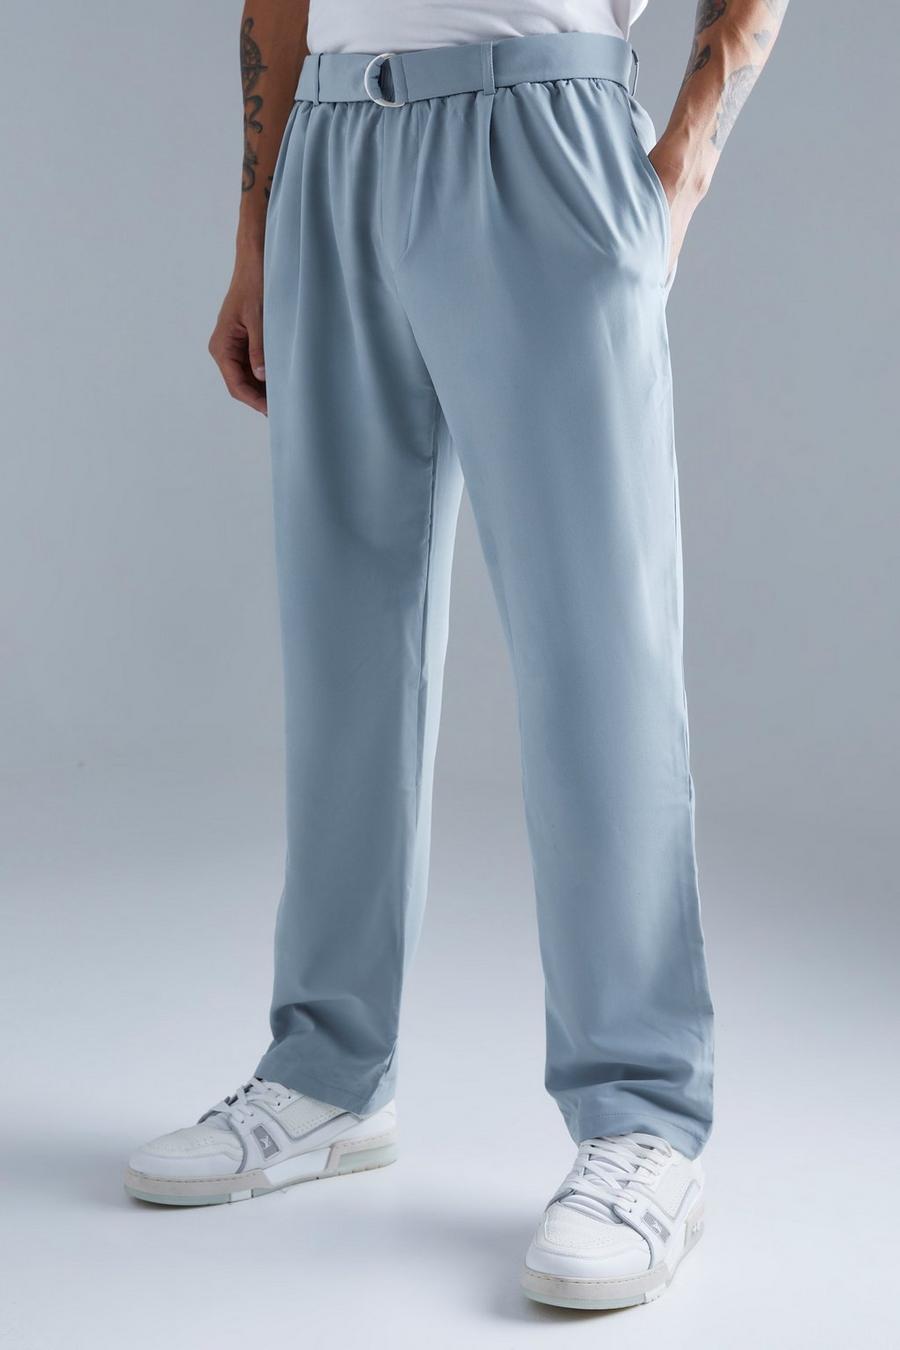 chitengye] pantalones elásticos con cintura elástica para hombre